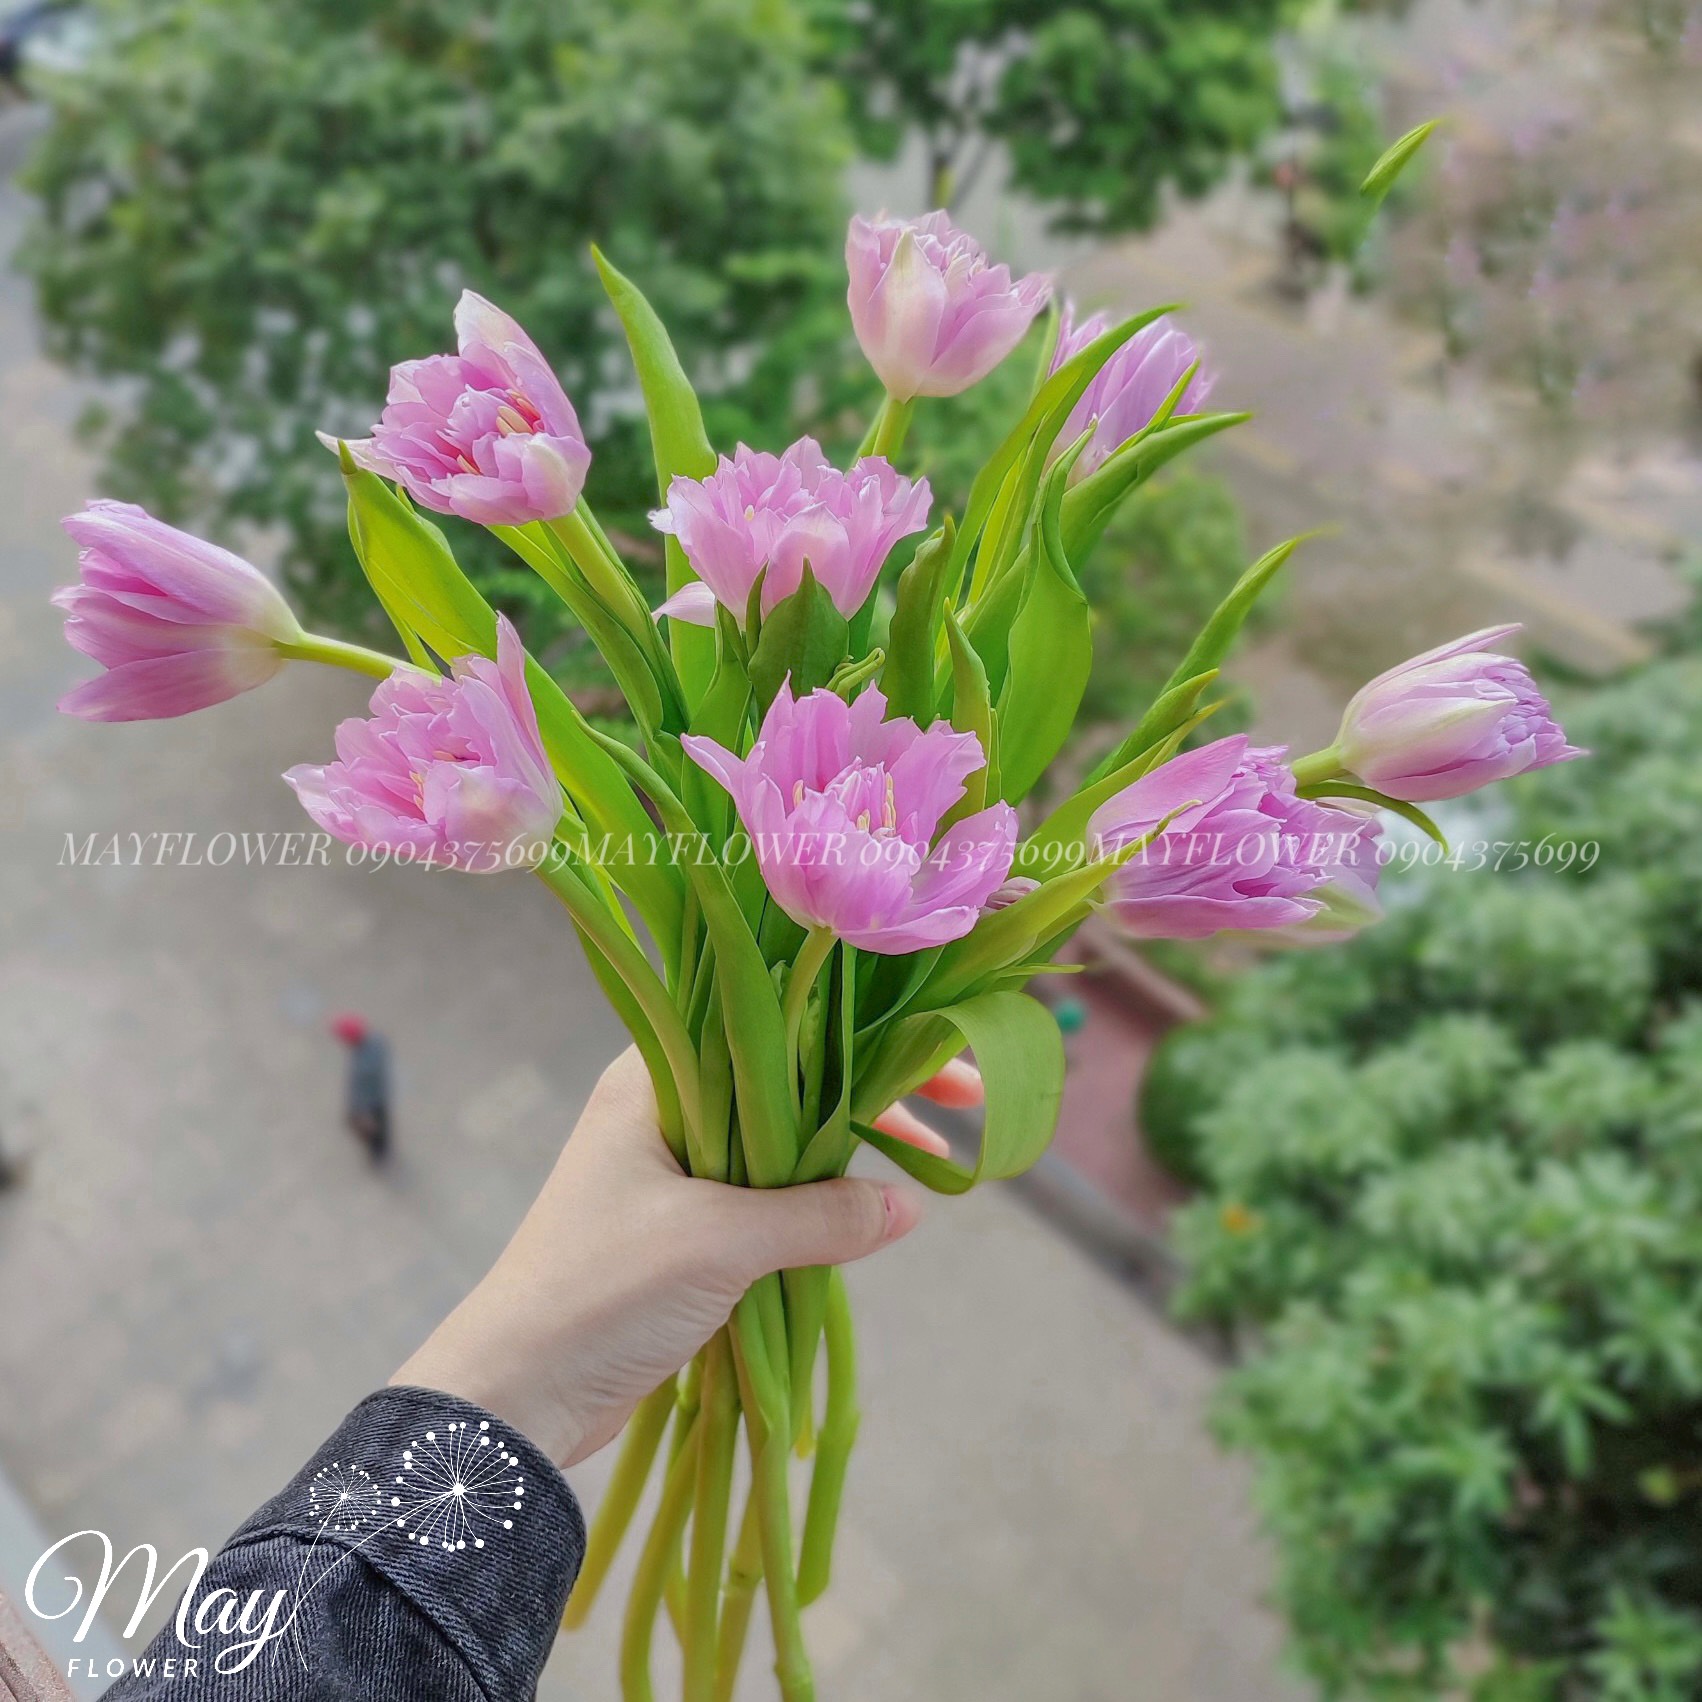 Top 3 mẫu hoa tặng cô giáo ngày 20/10 - Cửa hàng hoa tươi May Flower